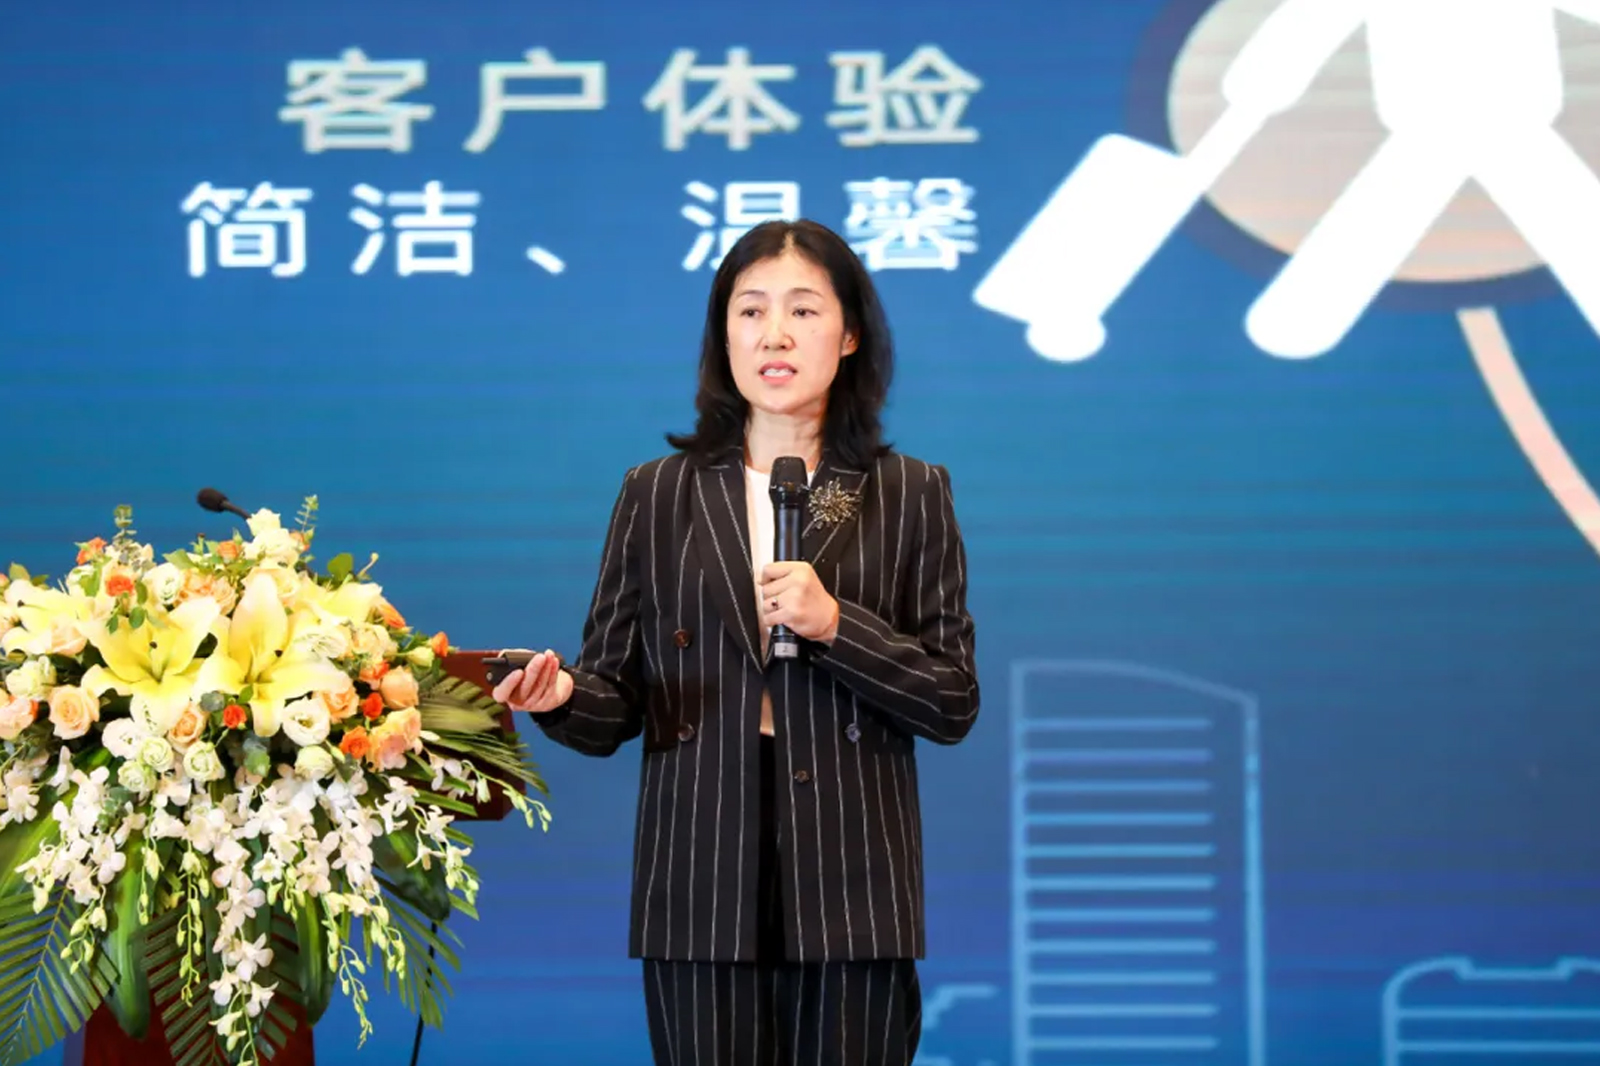 西软公司董事长王敏敏女士发表演讲